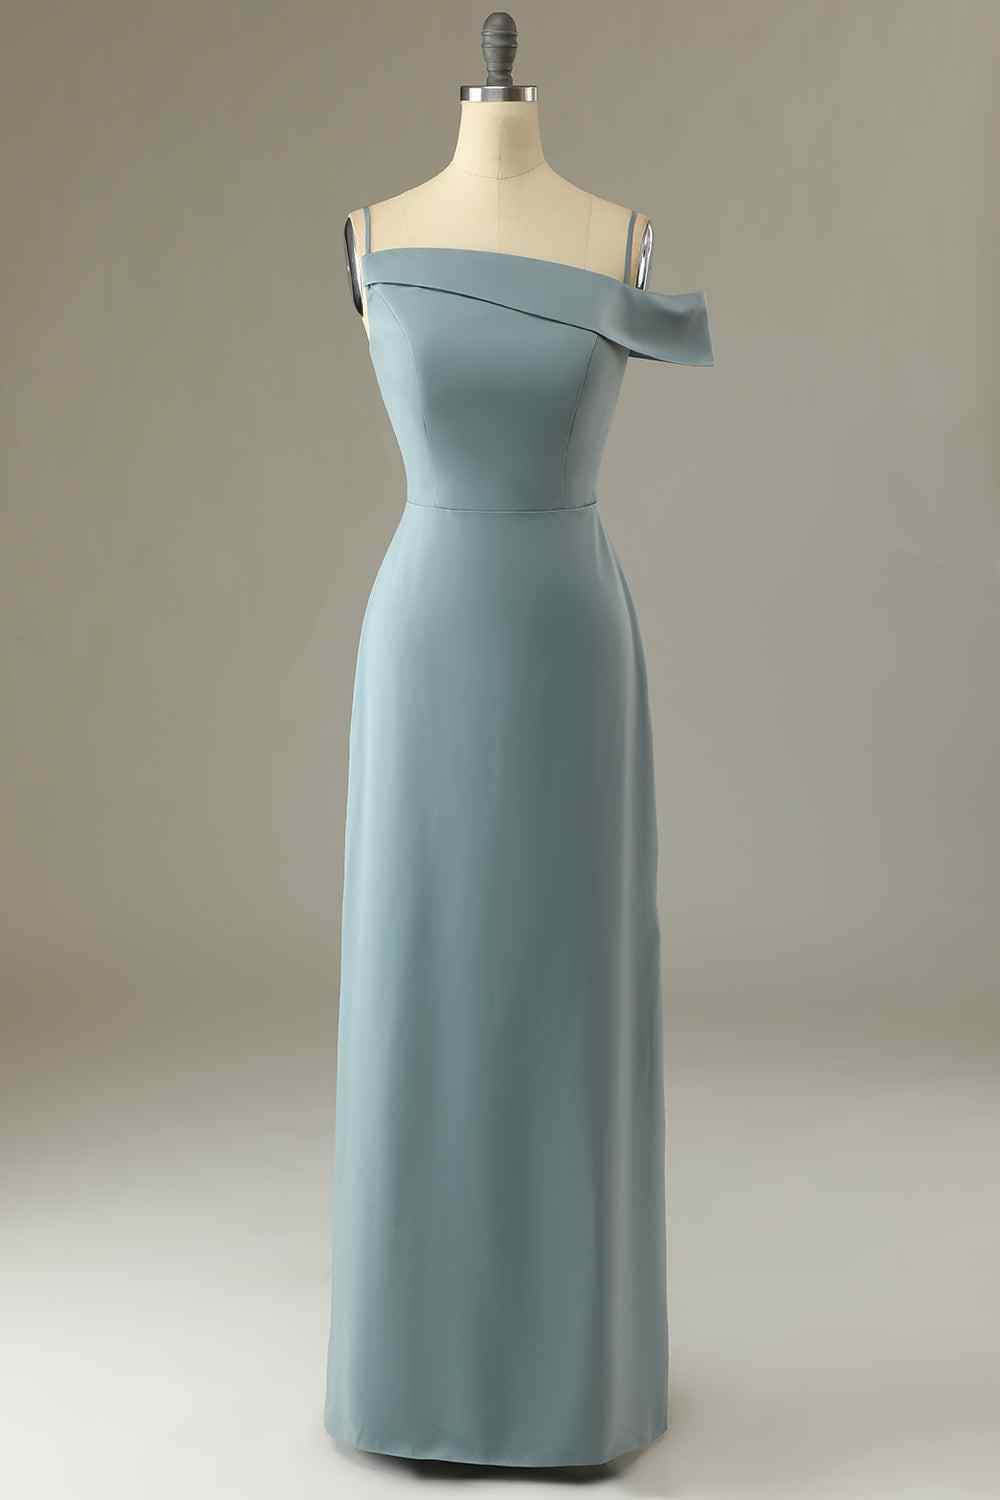 Dolphin Grey A-line Asymmetrical Neck Satin Long Bridesmaid Dress